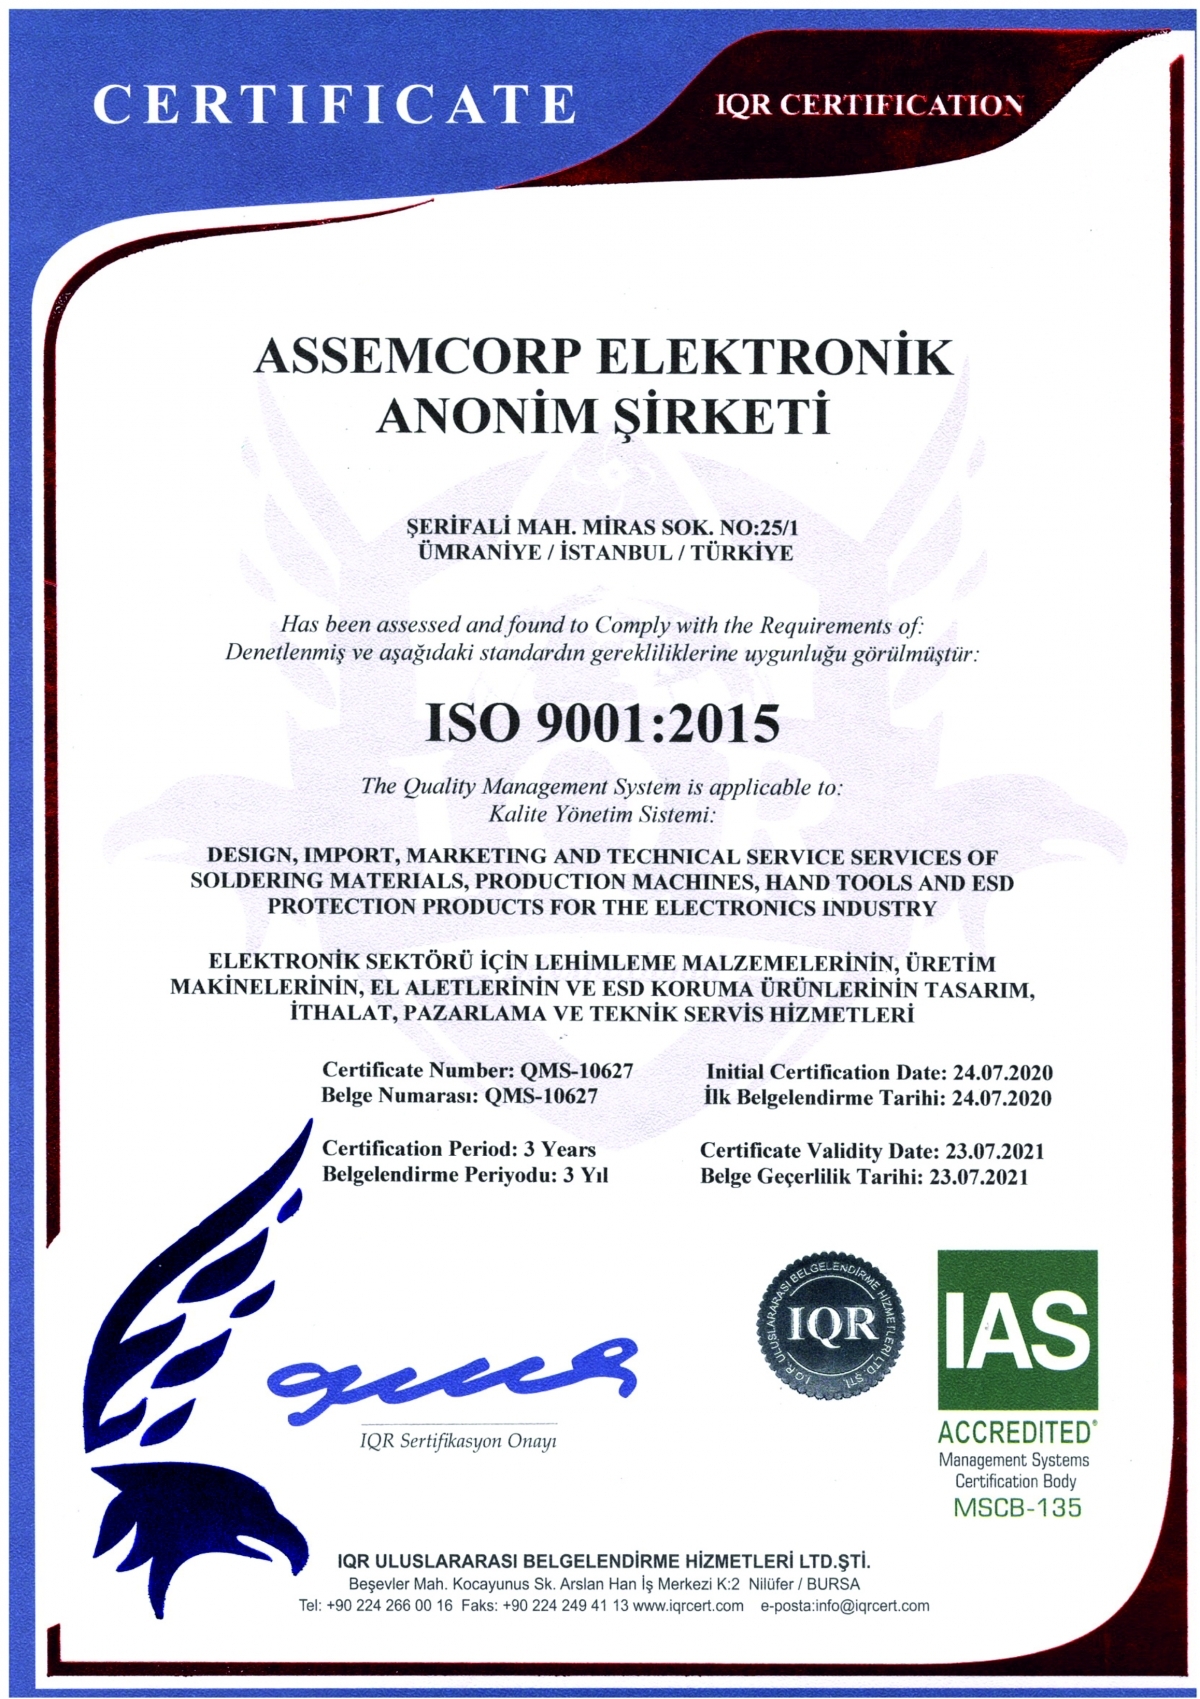 AssemCorp ISO 9001, ISO 14001 ve ISO 45001 belgelerini almıştır